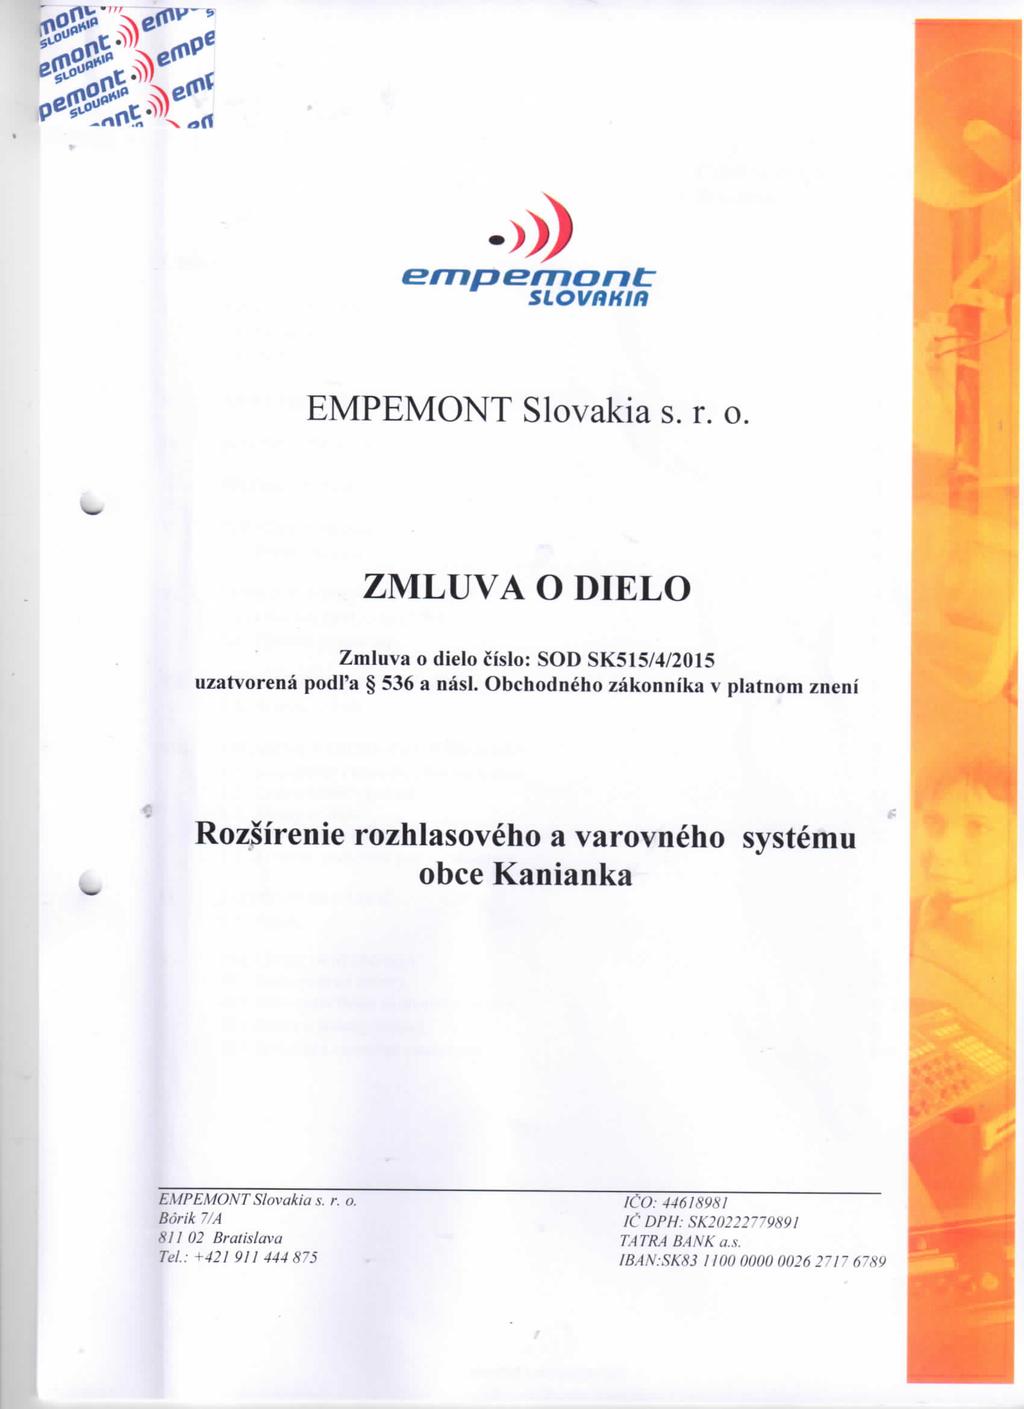 empemont: SLOVRHIR EMPEMONT Slovakia s. r. o ZMLUVA O DIELO Zmluva o dielo cislo: SOD SK515/4/2015 uzatvorena pod Pa 536 a nasl.